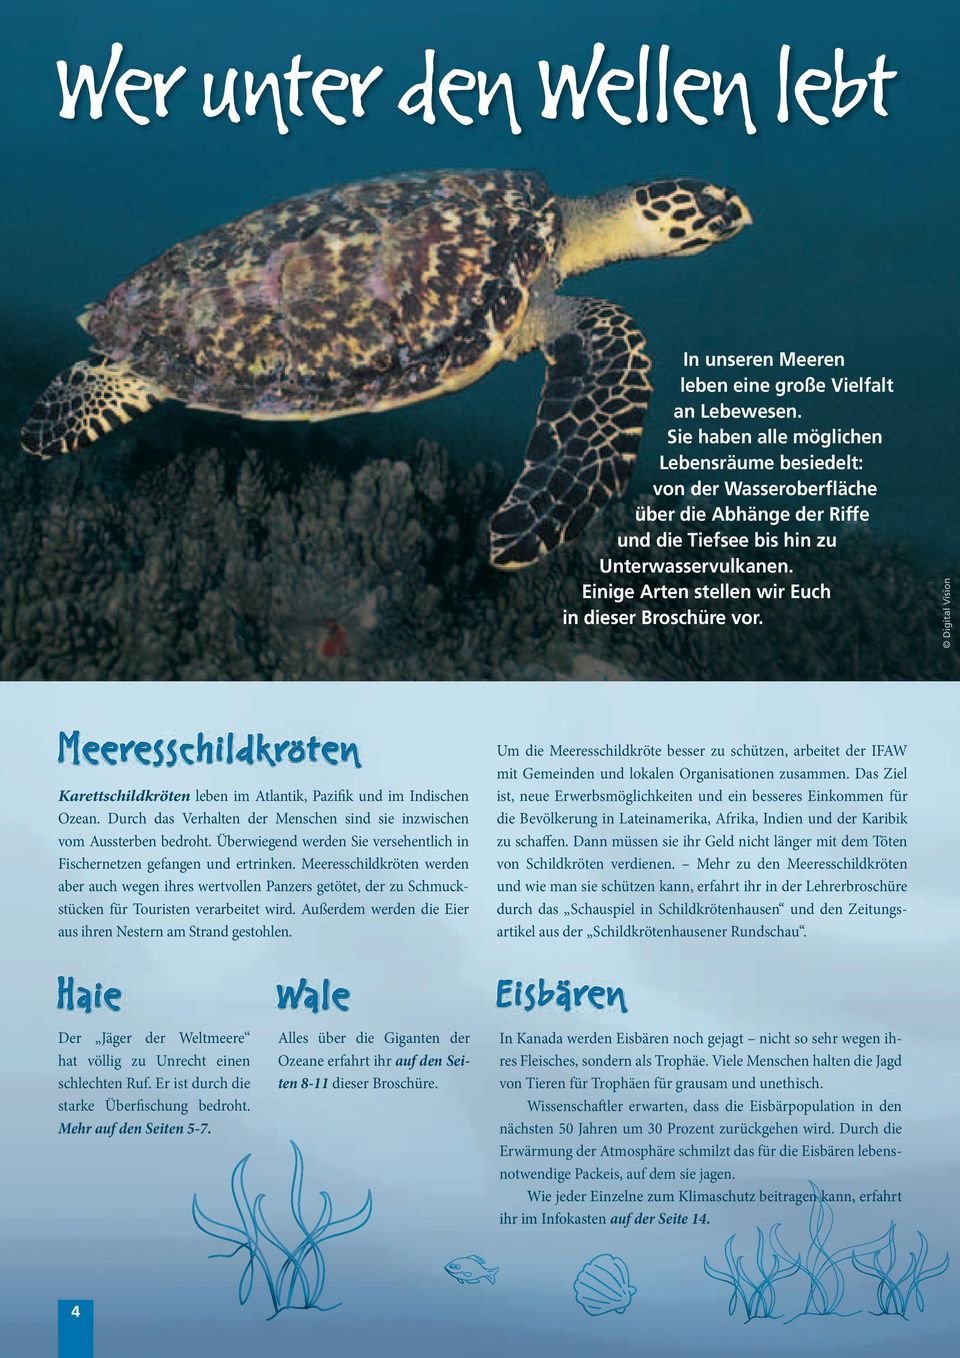 Einige Arten stellen wir Euch in dieser Broschüre vor. Digital Vision Meeresschildkröten Karettschildkröten leben im Atlantik, Pazifik und im Indischen Ozean.